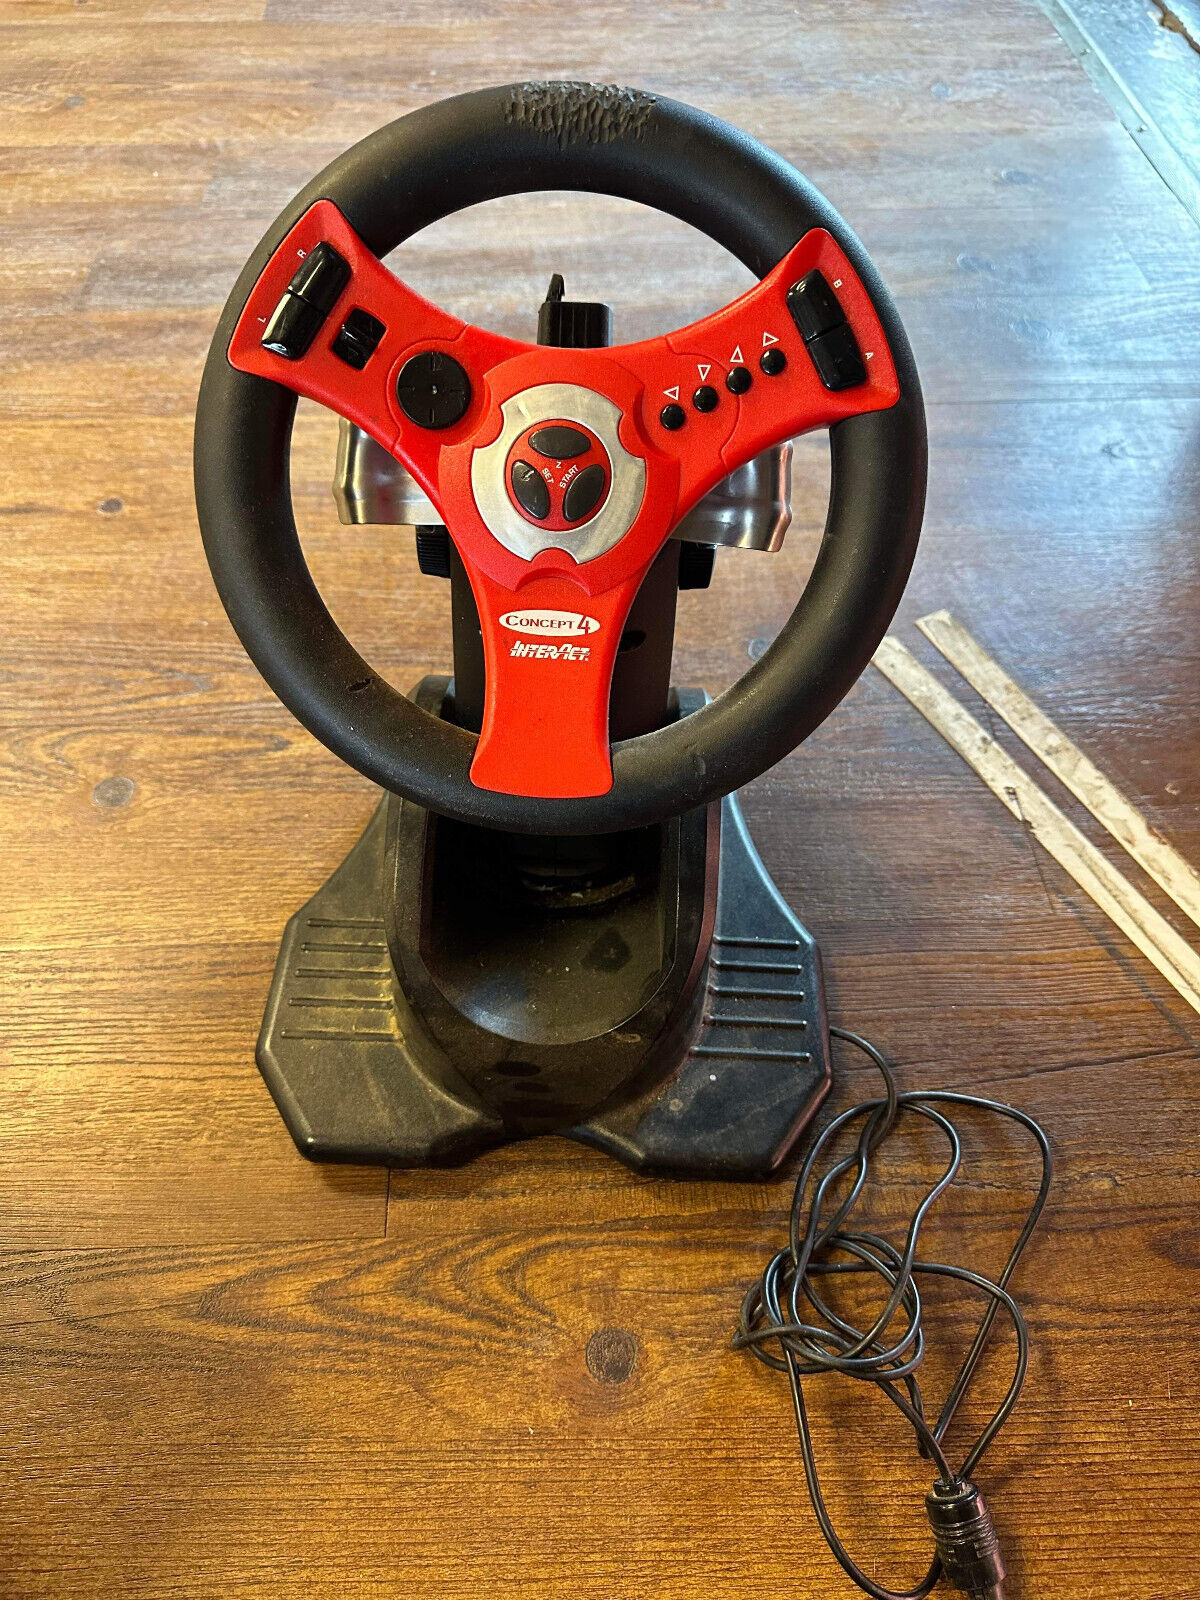 Vintage Video Game Concept 4 Racing Steering Wheel For Nintendo 64 N64